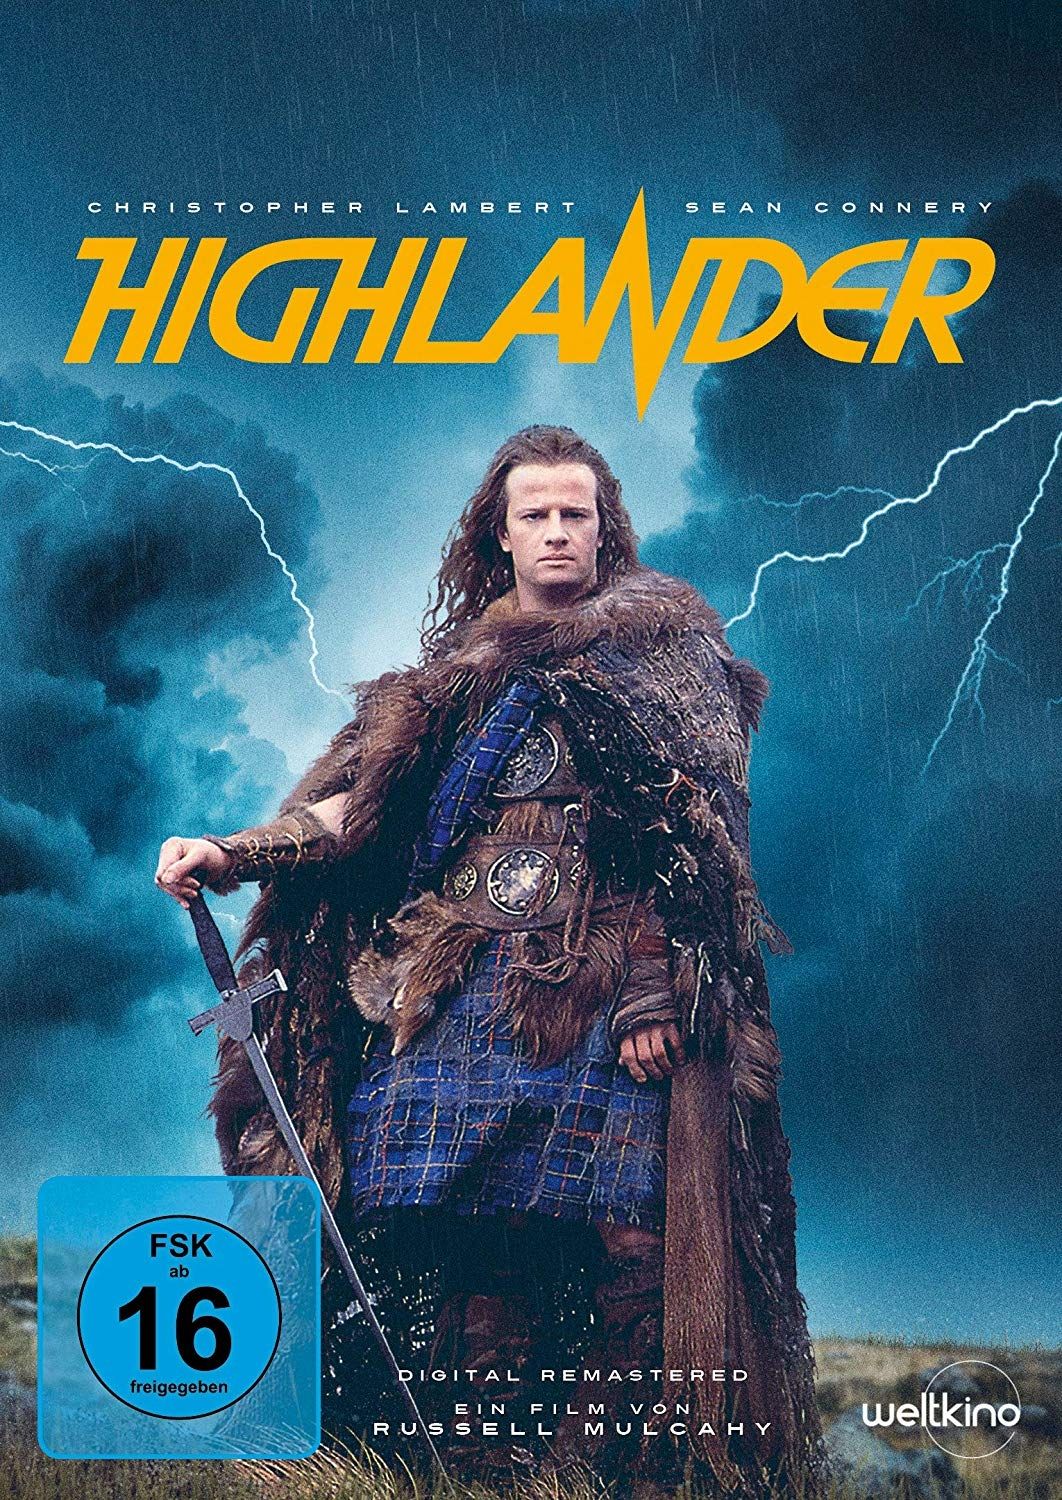 Highlander - Es kann nur einen geben (Uncut) (Digital Remastered)